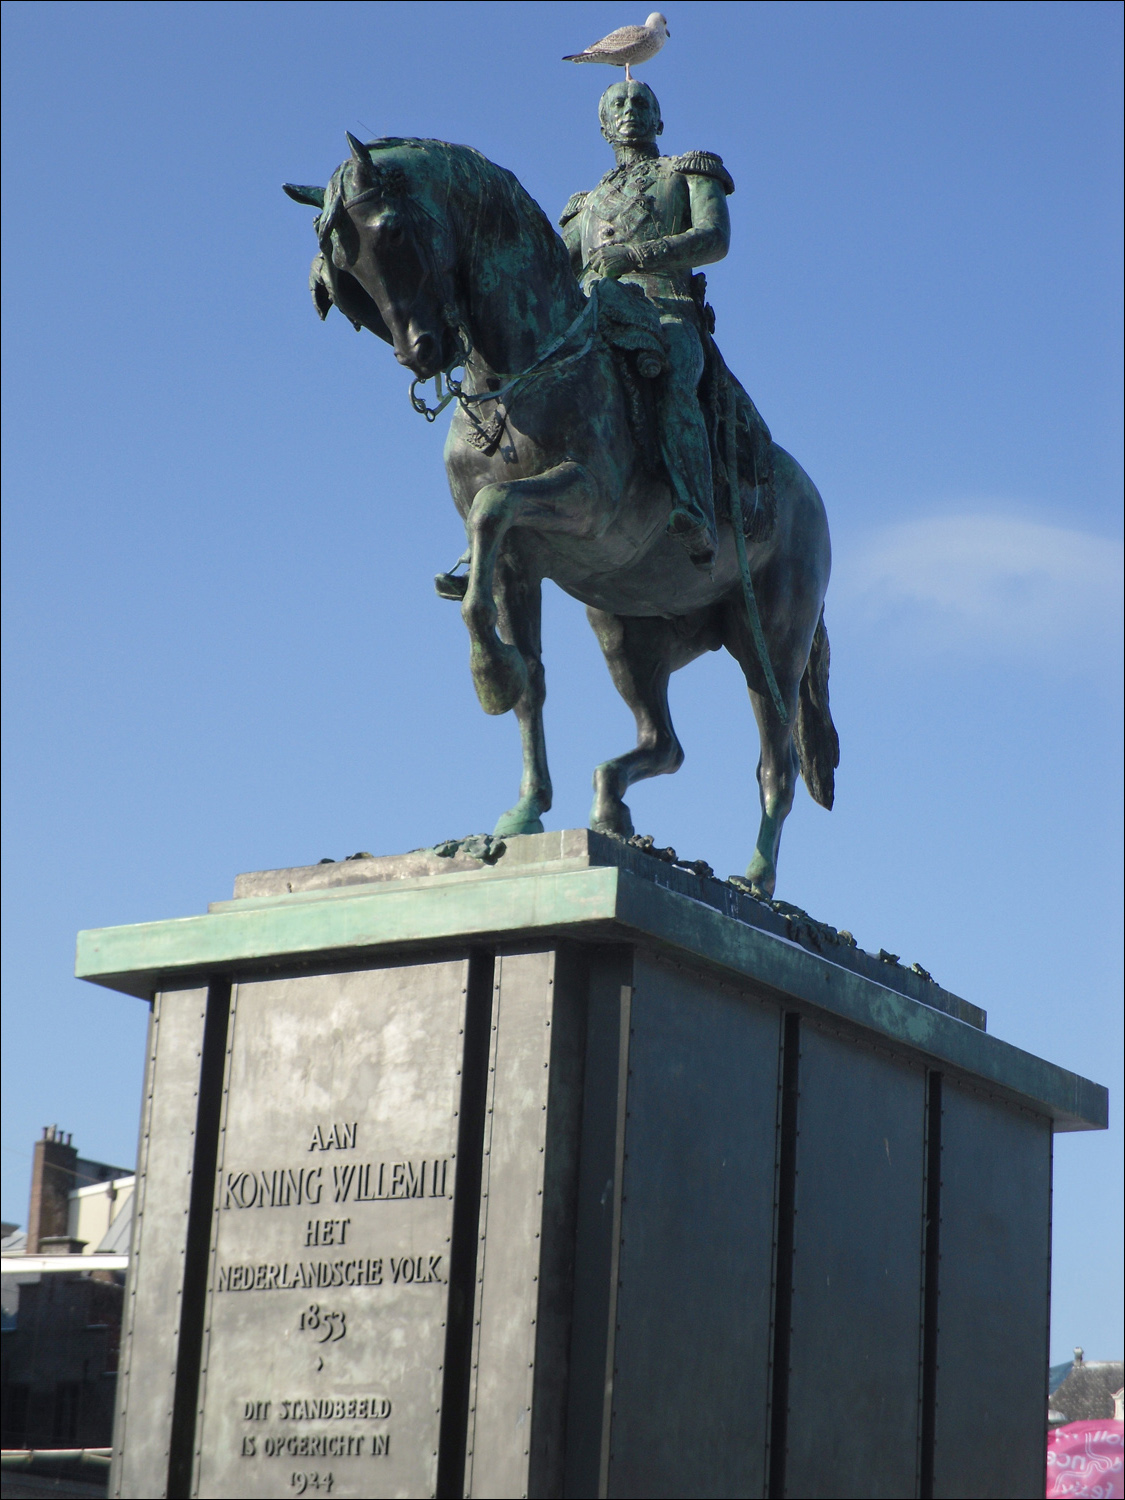 Hague-statue of King William II, complete w/bird